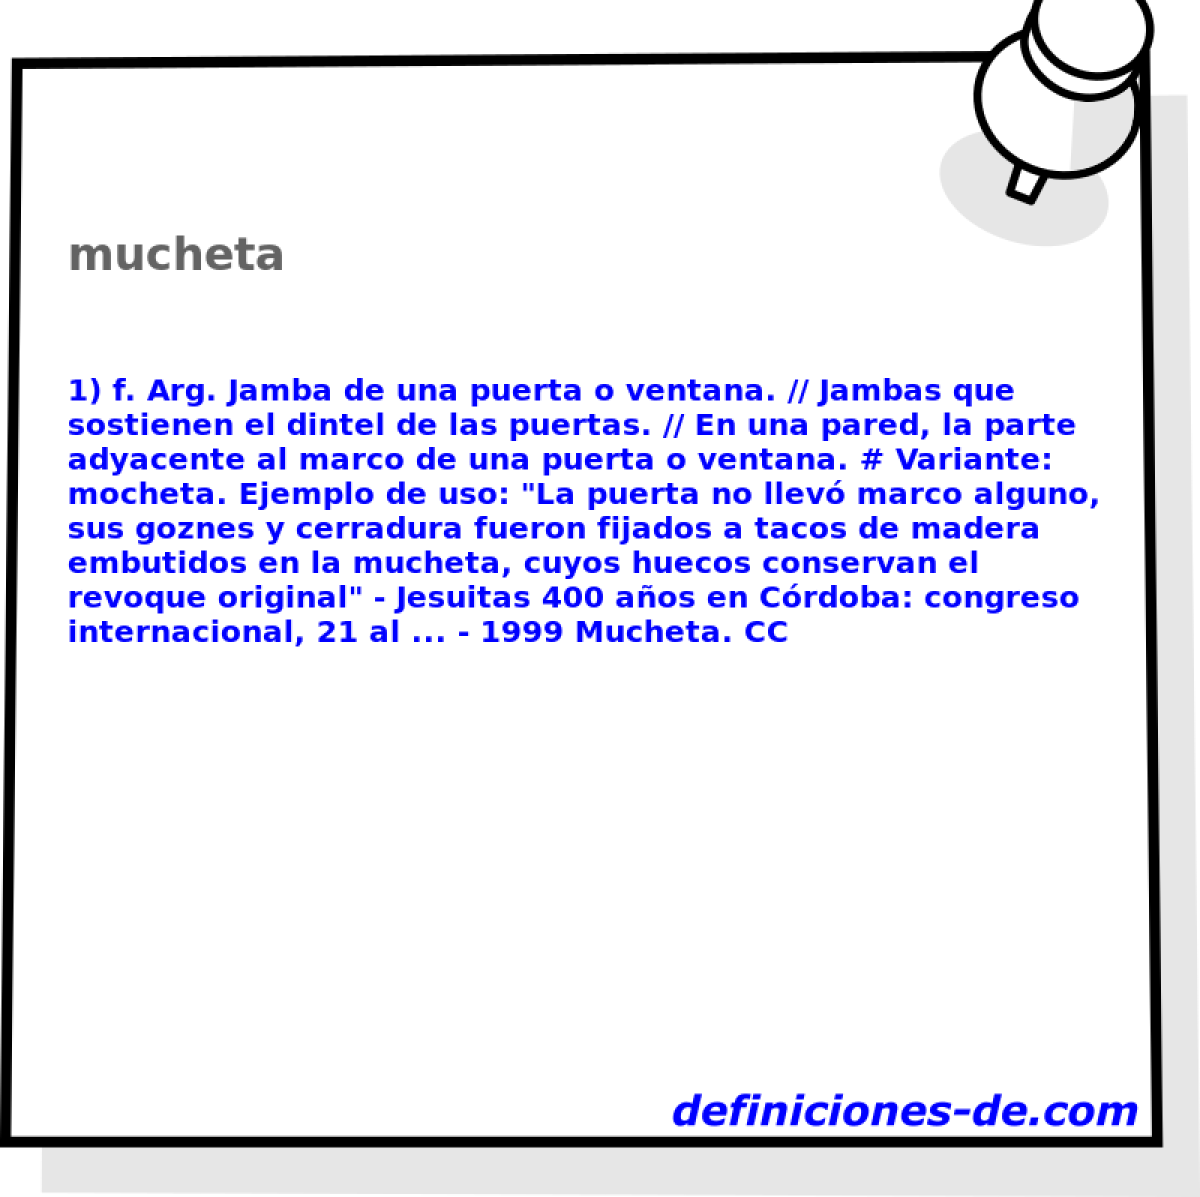 mucheta 